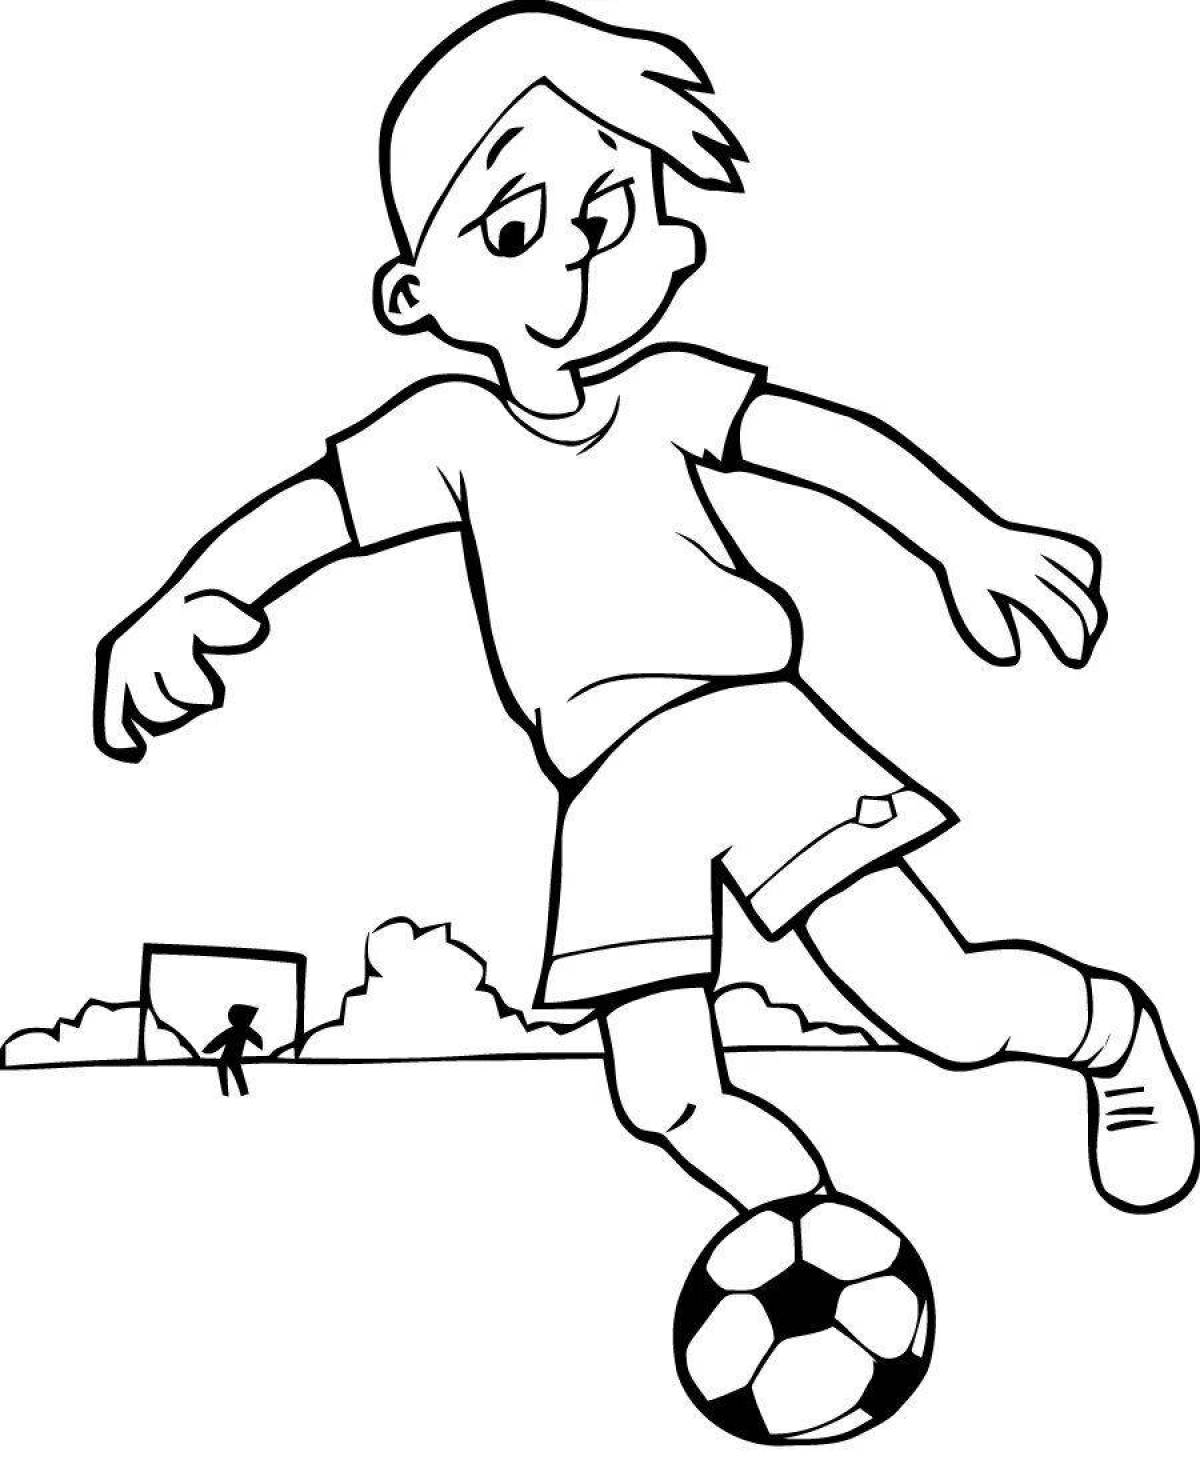 Раскраска яркий мальчик, играющий в футбол